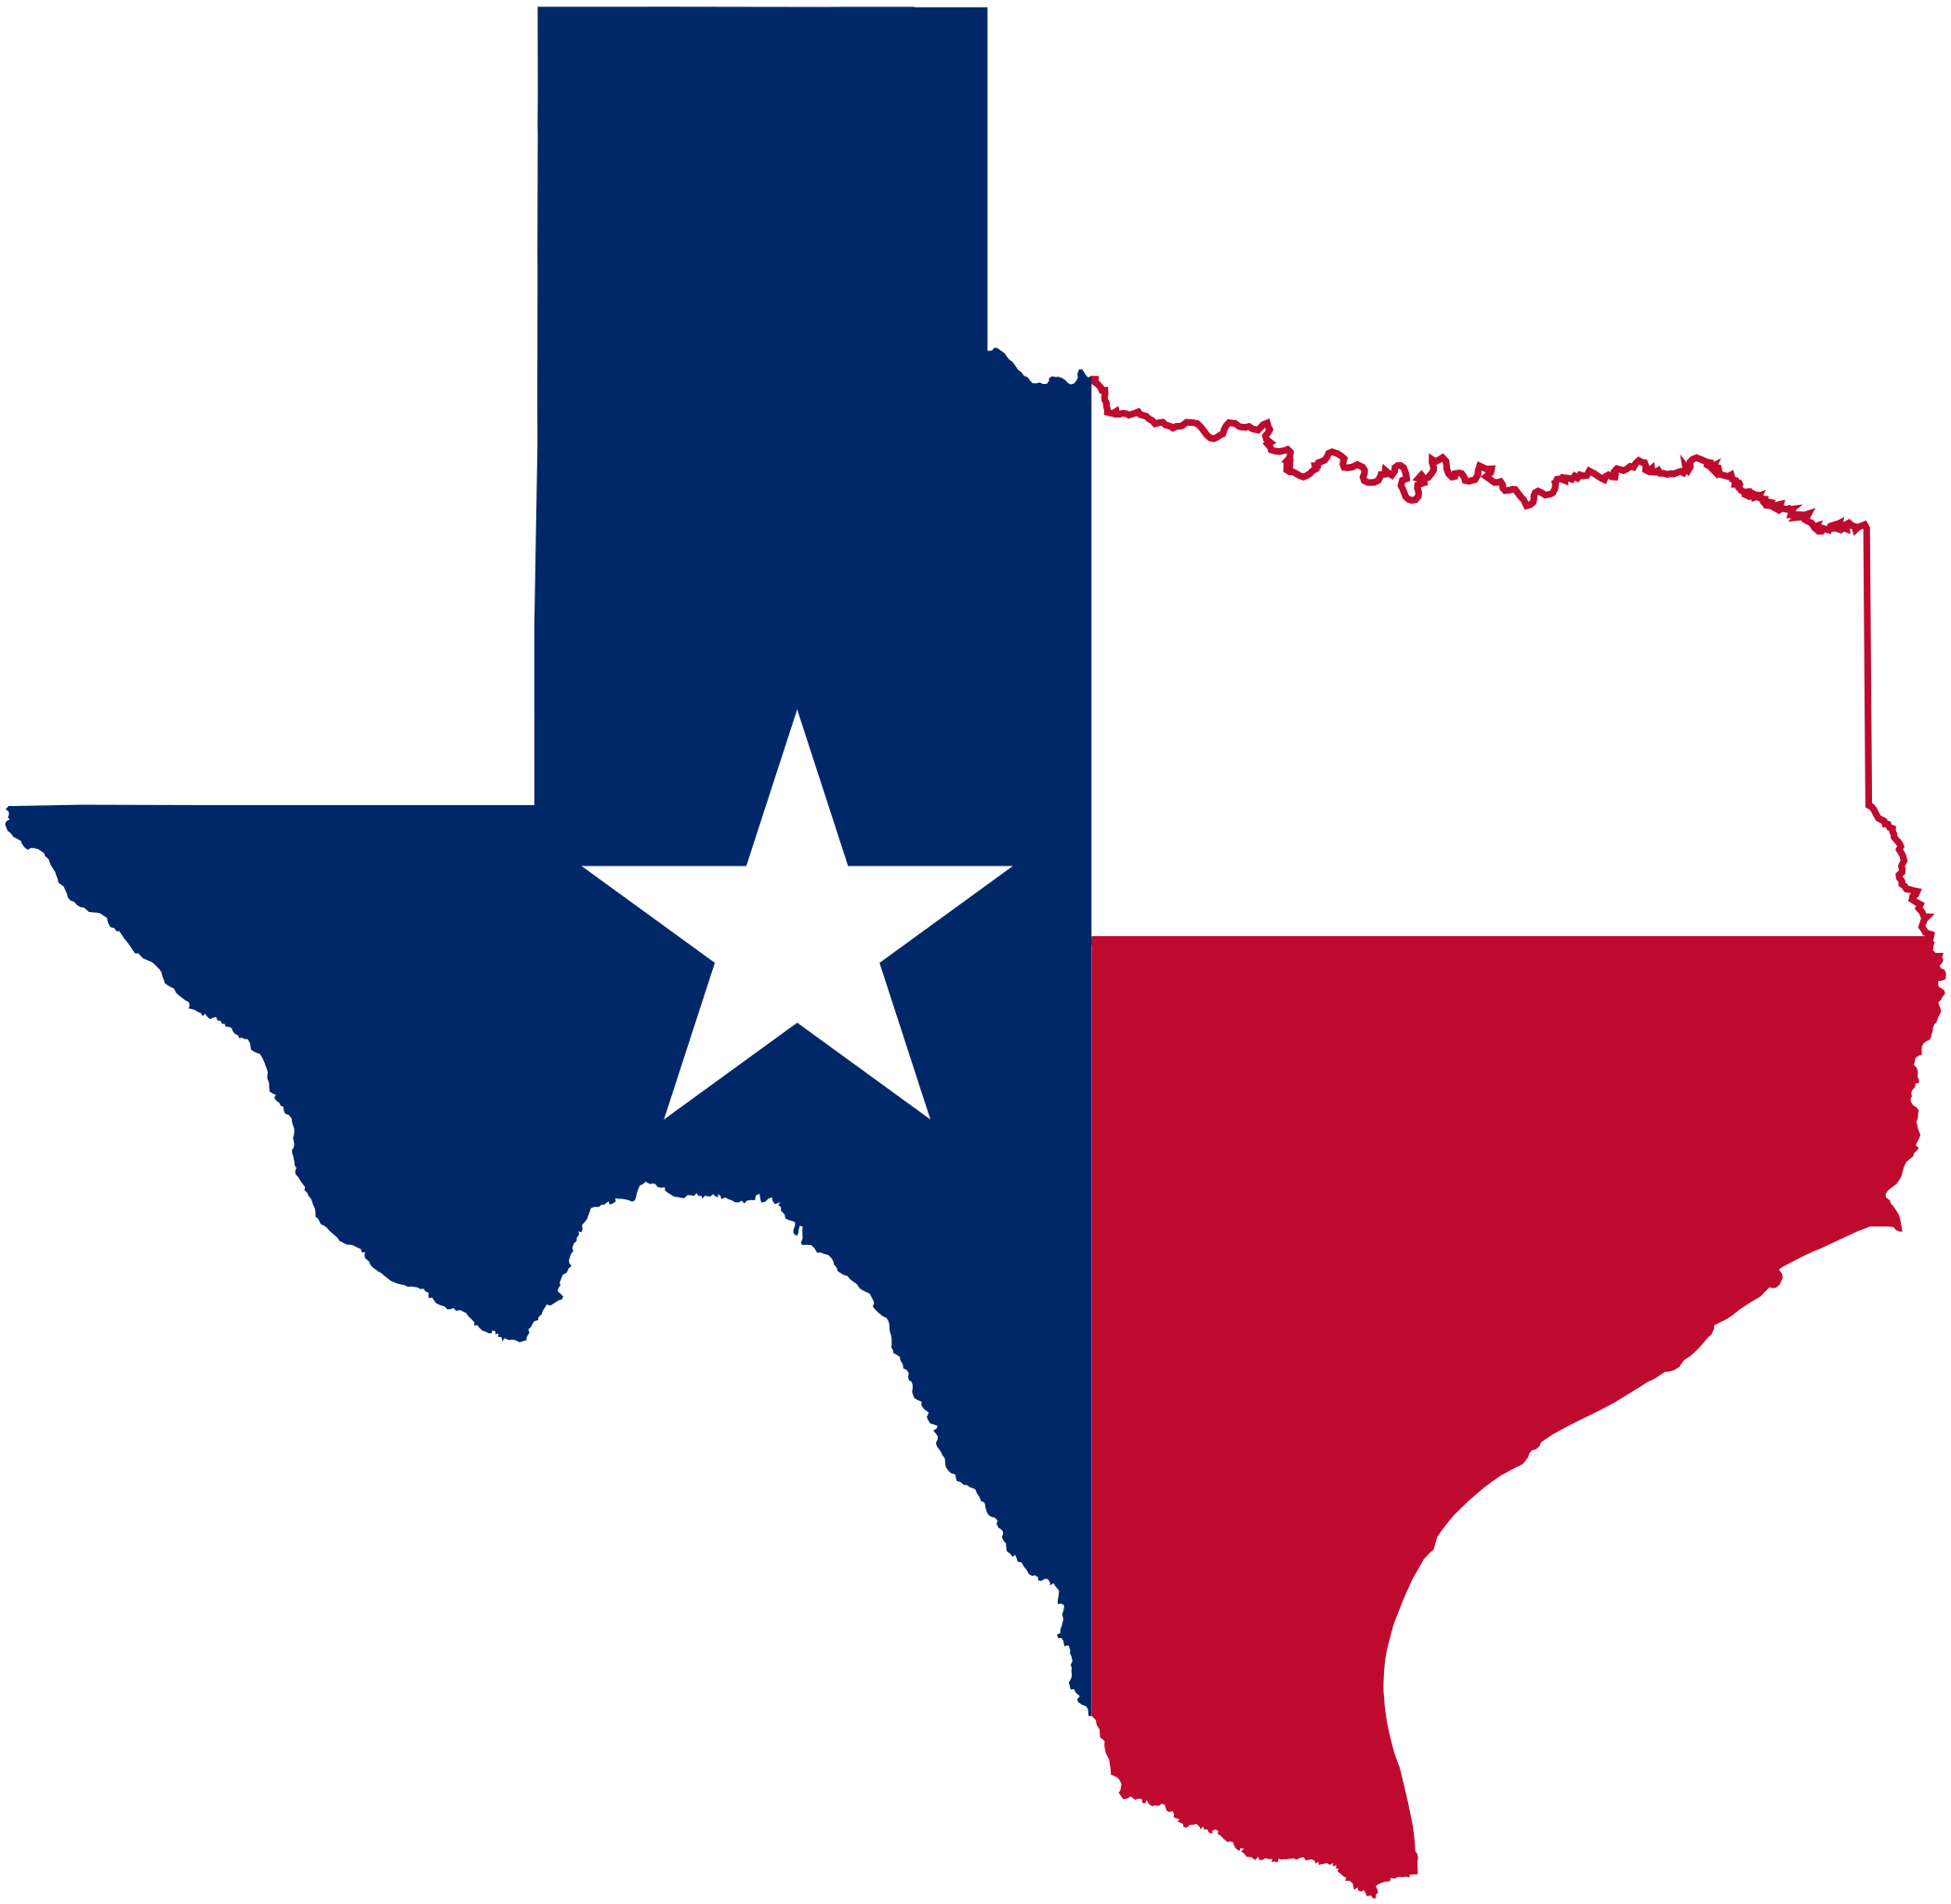 Texas medical insurance company